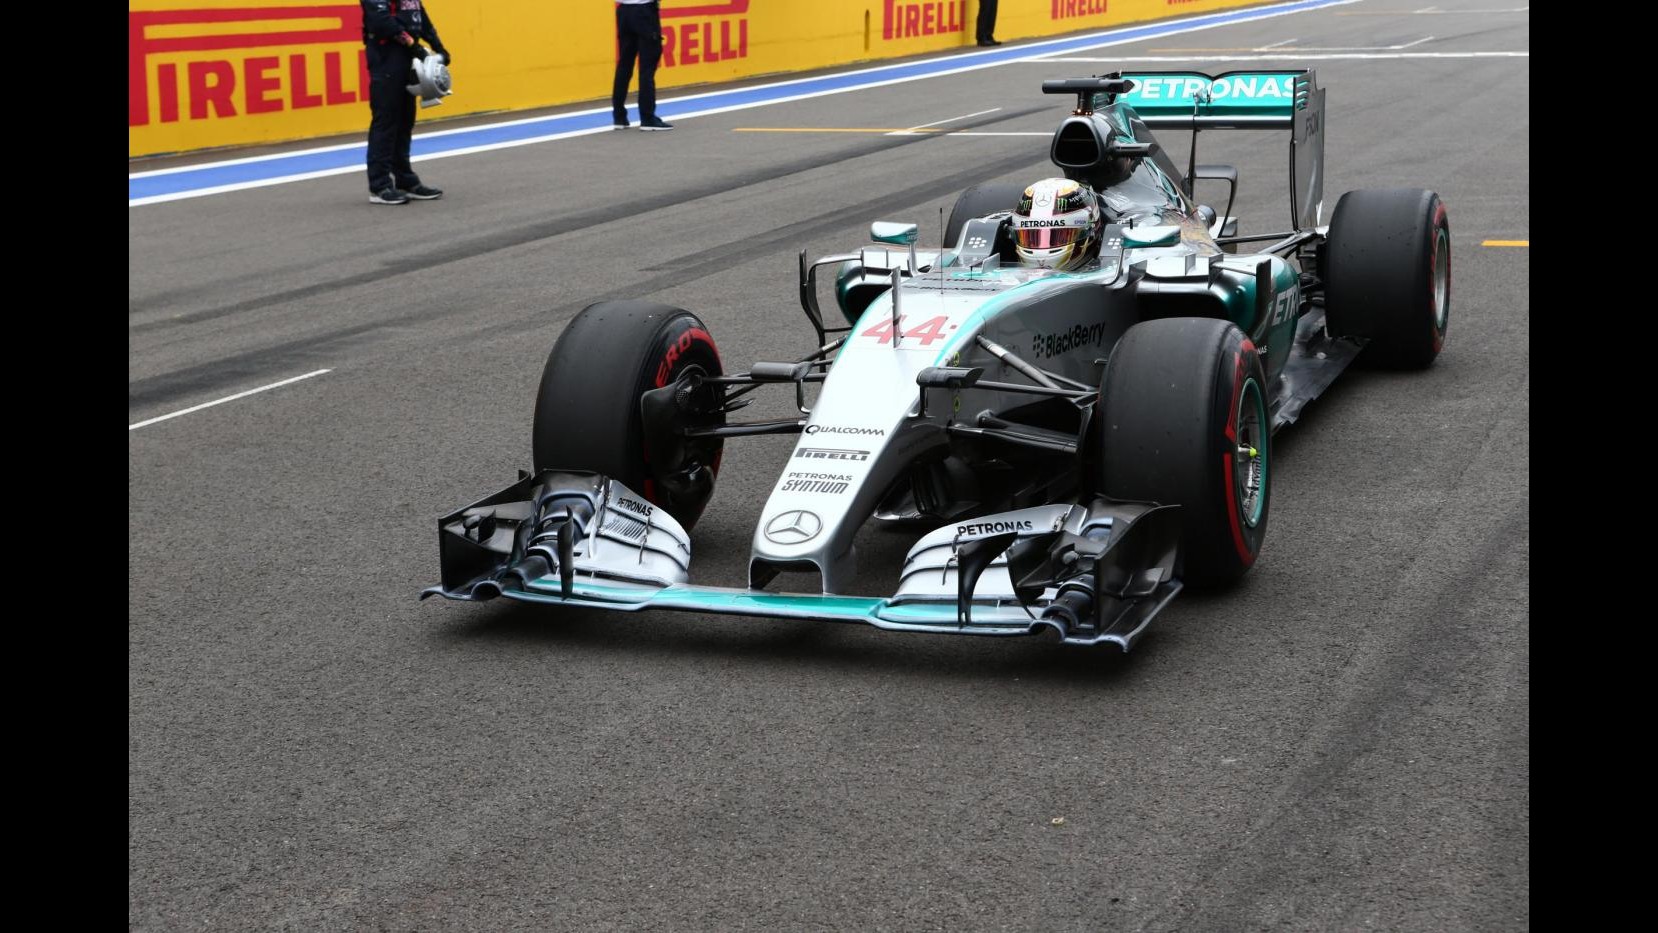 F1, Hamilton vince in Russia davanti a Vettel, 3° Perez. Rosberg ritirato